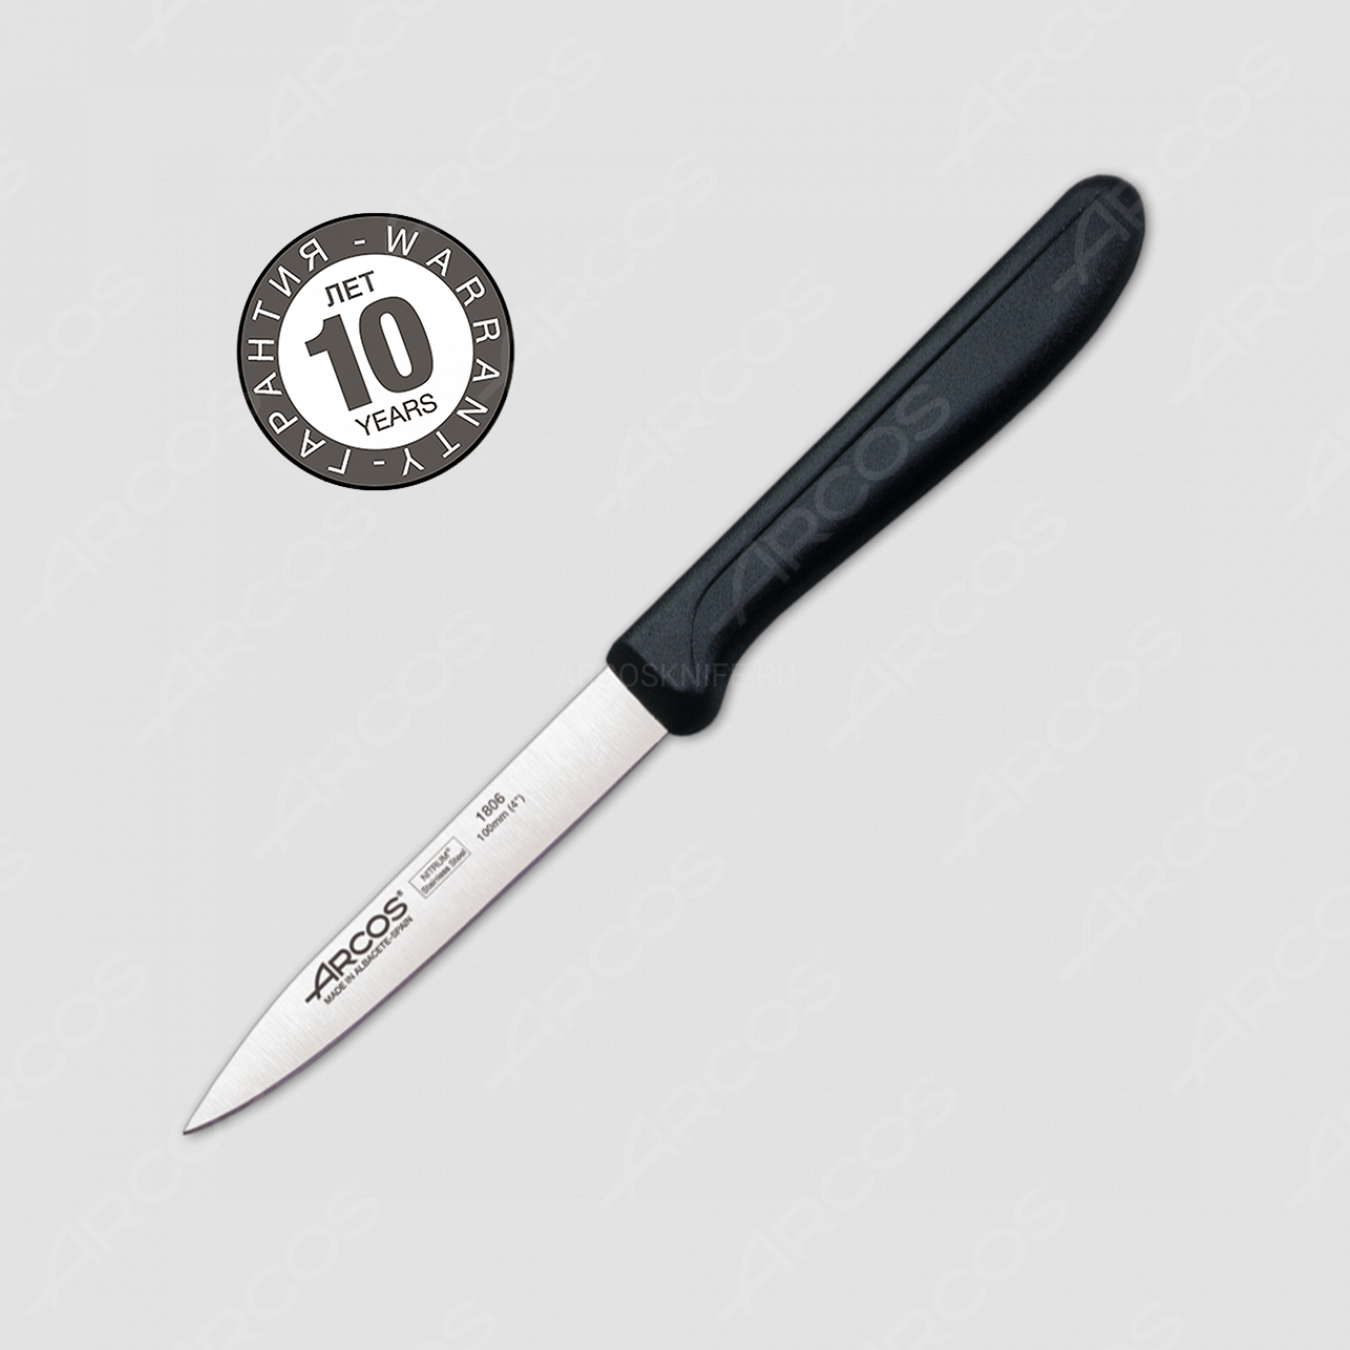 Нож кухонный для чистки 10 см, рукоять черная (блистр), серия Genova, ARCOS, Испания